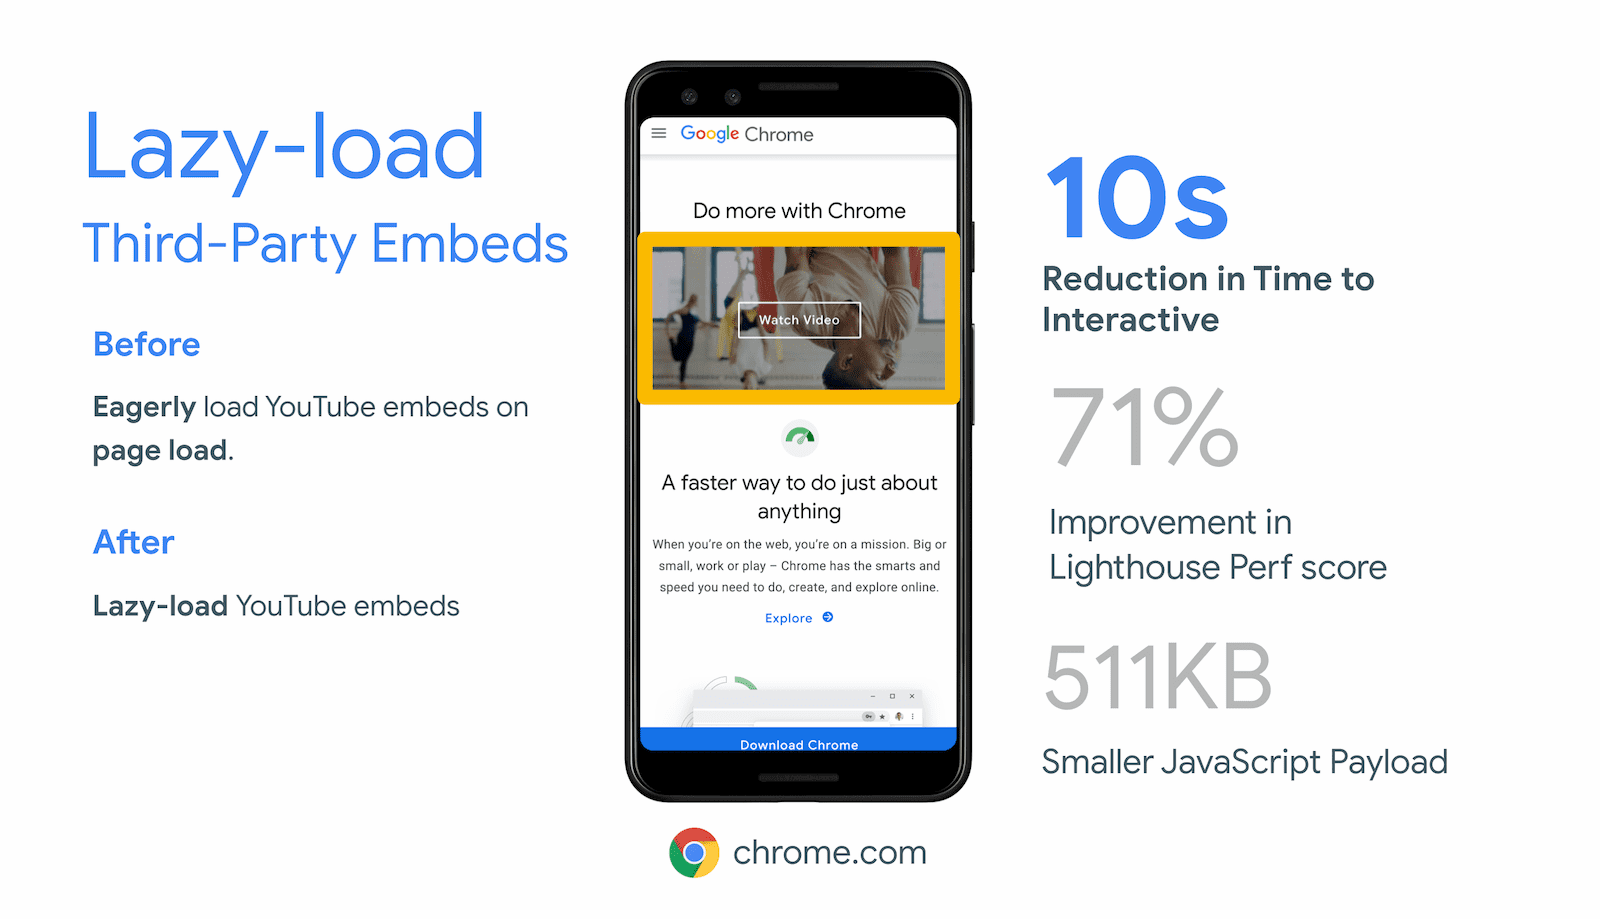 חברת Chrome.com השיגה הפחתה של 10 שניות במדד &#39;זמן עד לאינטראקטיביות&#39; על ידי טעינה מדורגת של מסגרות iframe מחוץ למסך עבור הטמעת הסרטונים ב-YouTube.